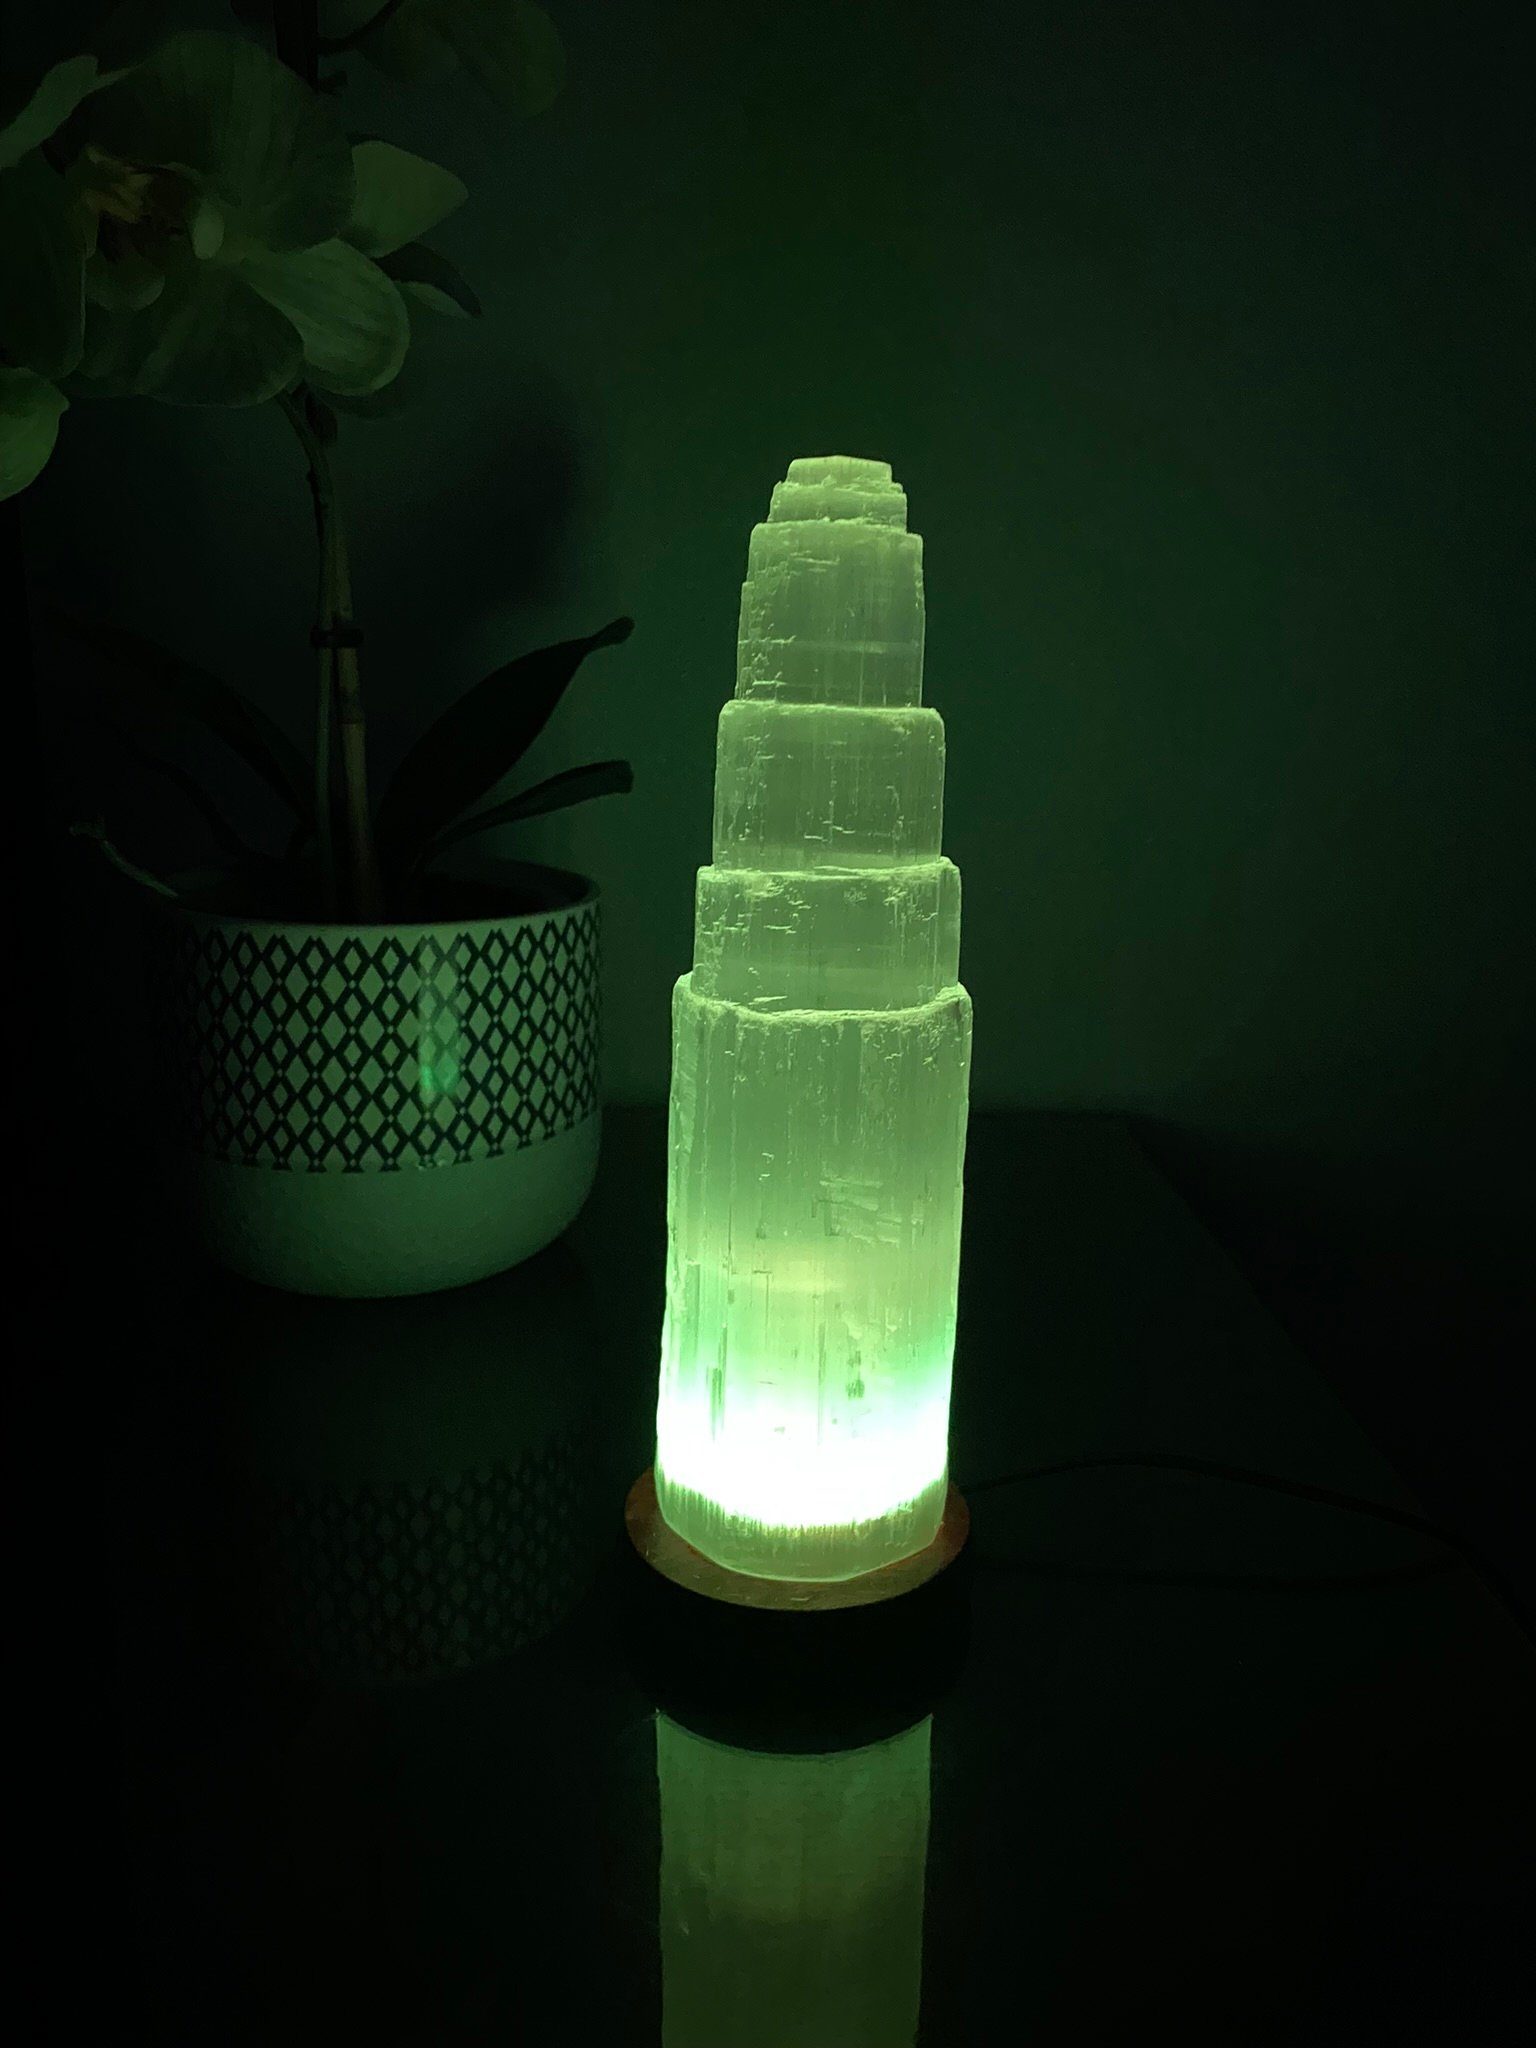 Tischlampe Farbwechsel Lampe Nachttischlampe Heimtex LED tischleuchte Selenite Kristall Turm lampe